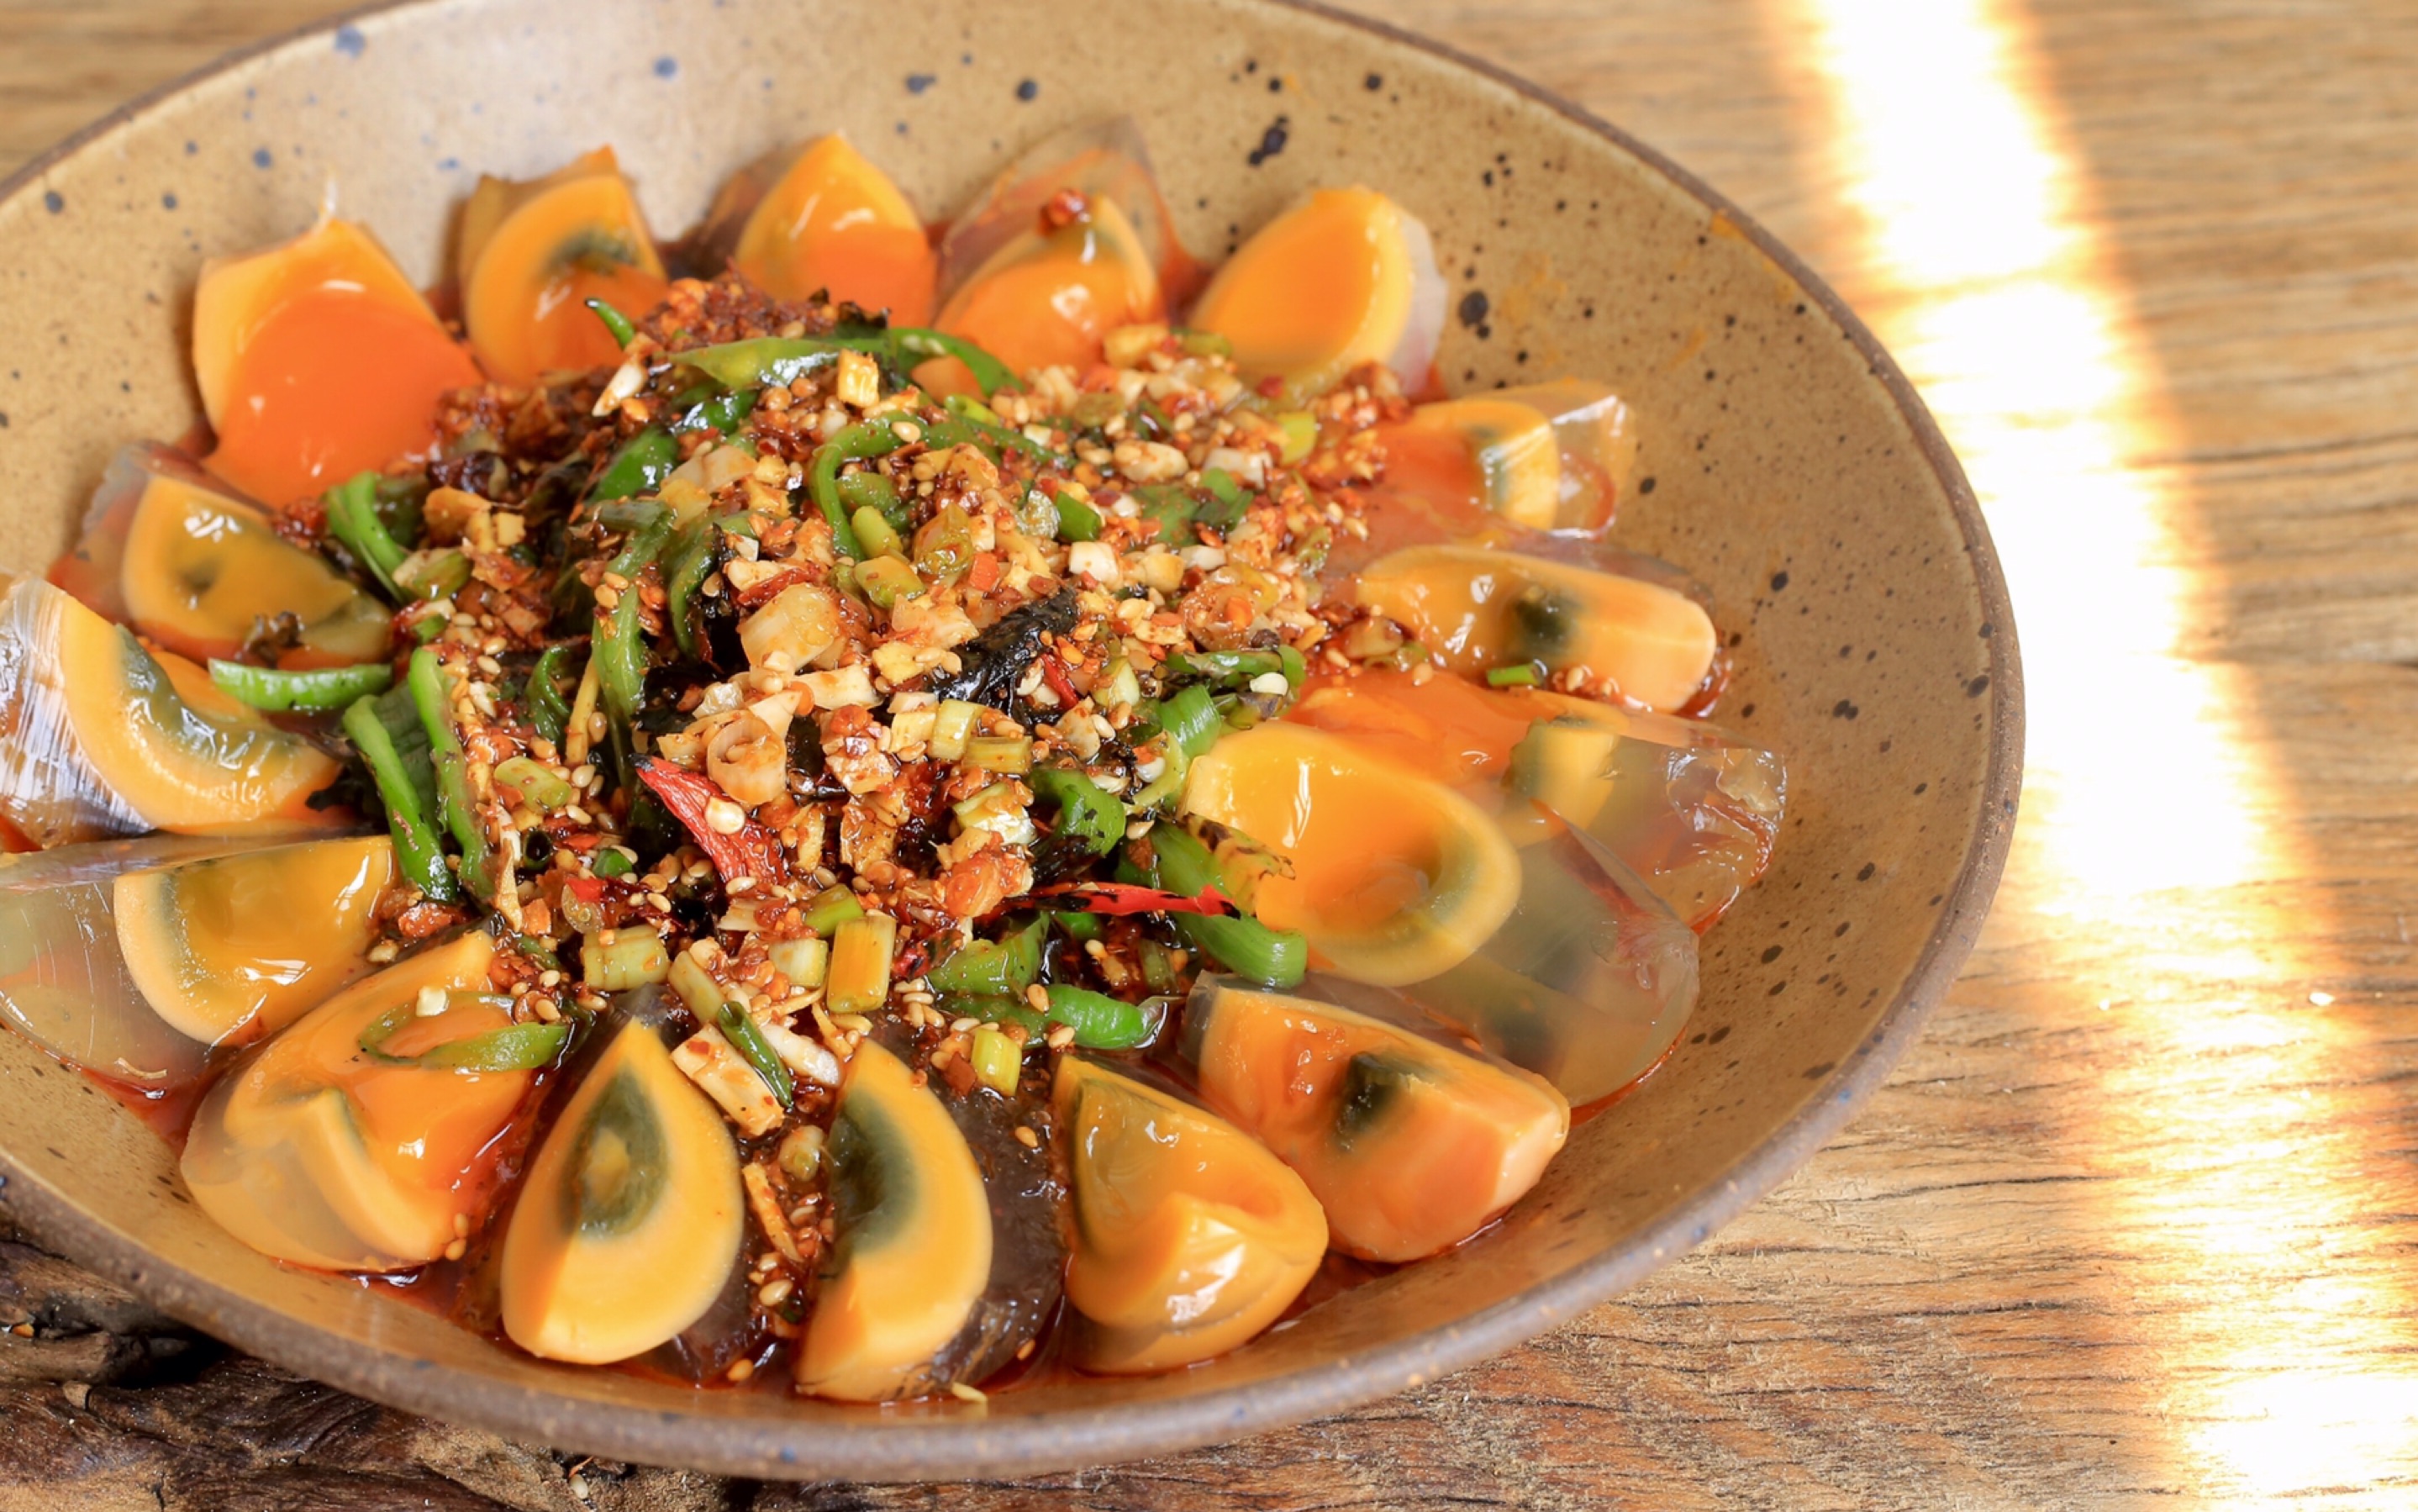 四川最常见的家常菜烧椒皮蛋,辣椒的干香加上皮蛋特殊的碱味,无异让